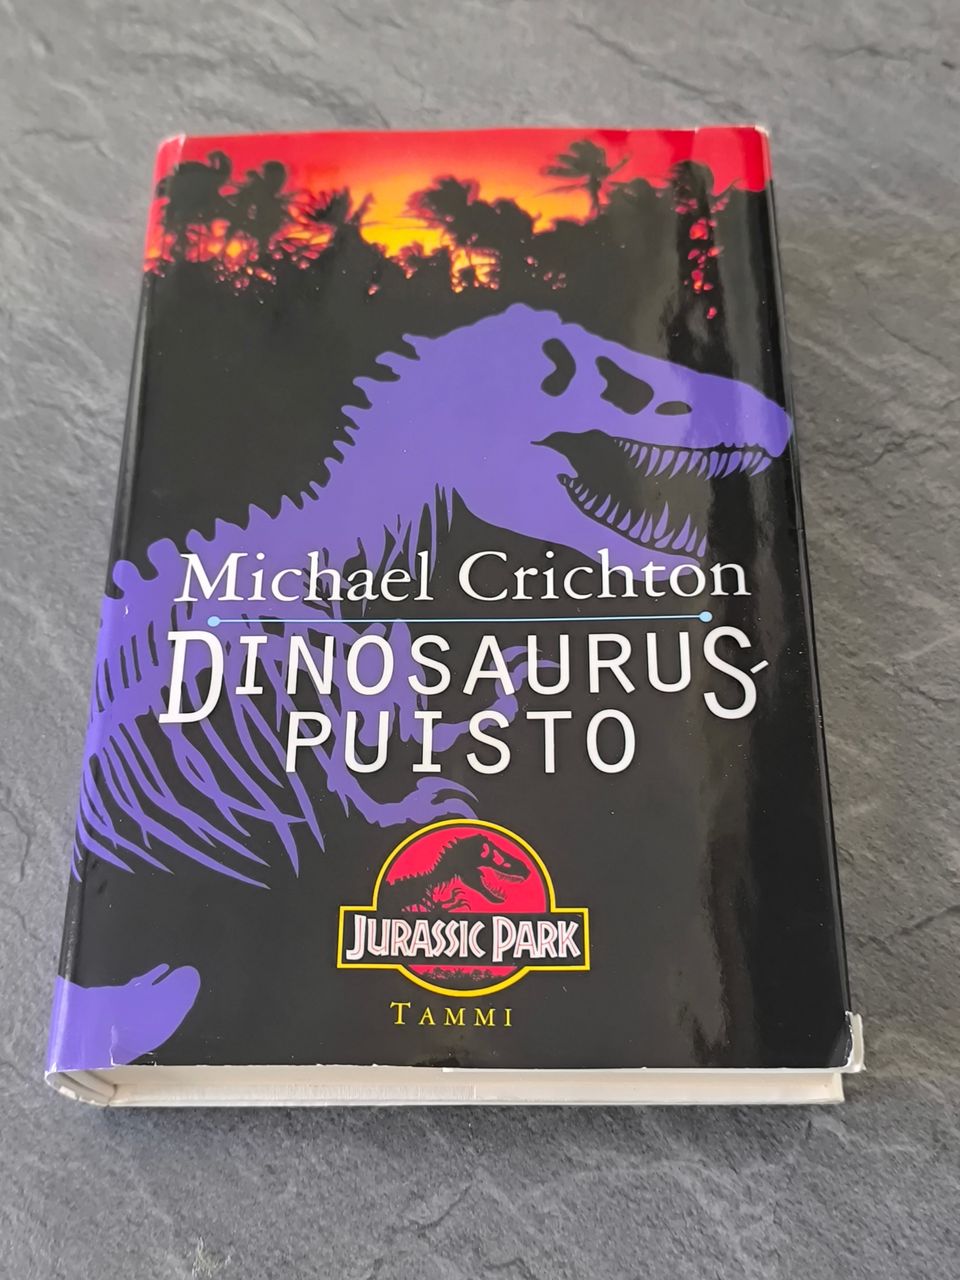 Dinosauruspuisto - Michael Crichton